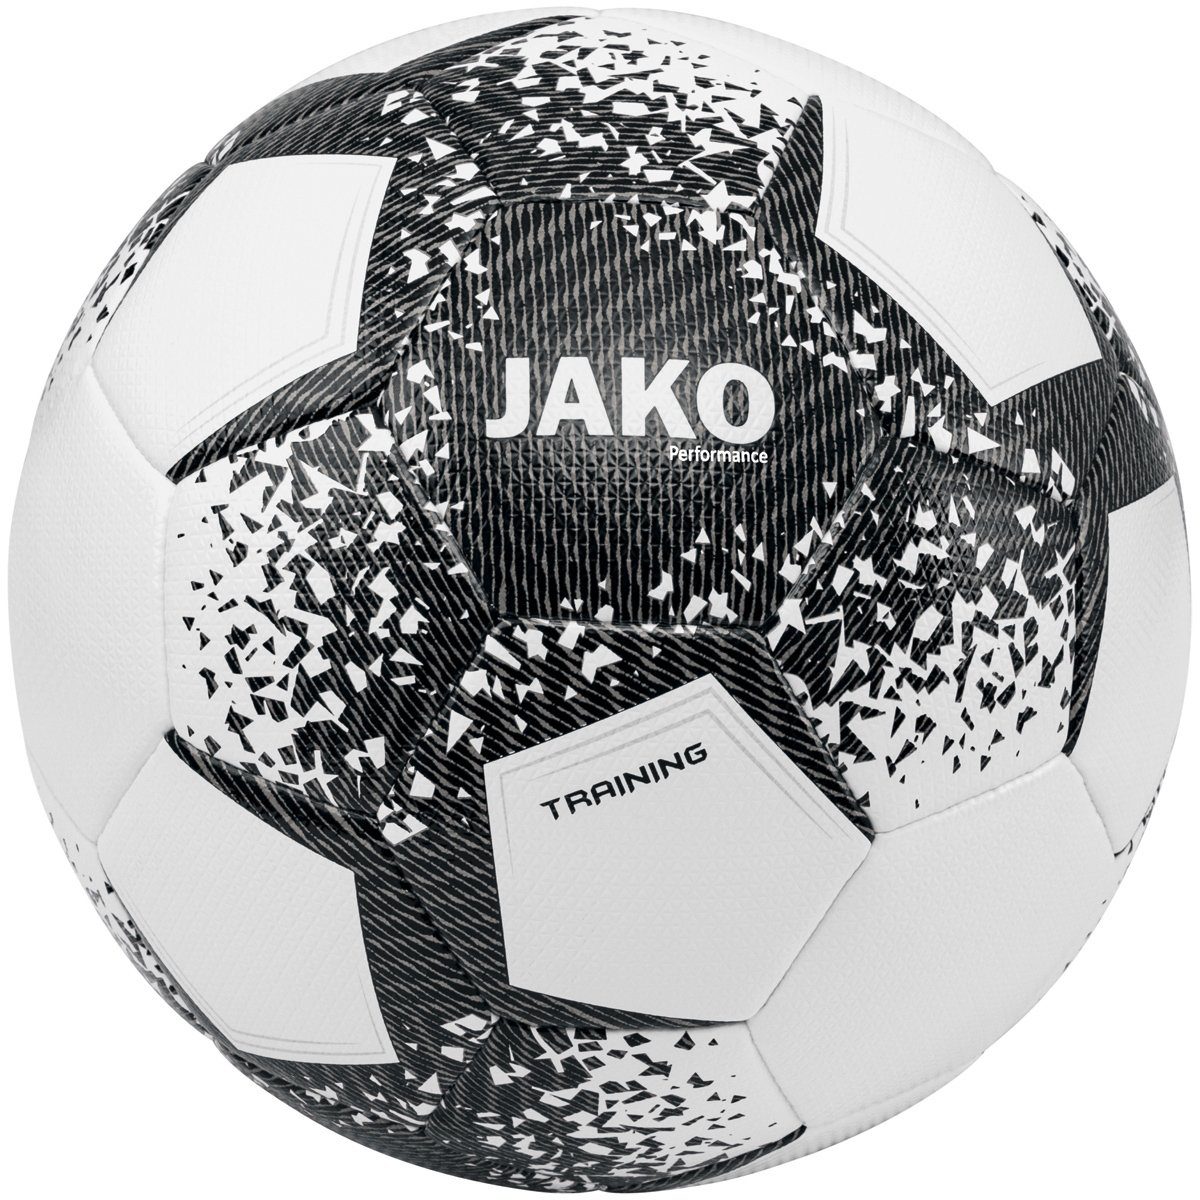 Ball (Ganzjahresartikel) Jako Performance weiss/schwarz/steingrau Trainingsball 2301 - Fußball